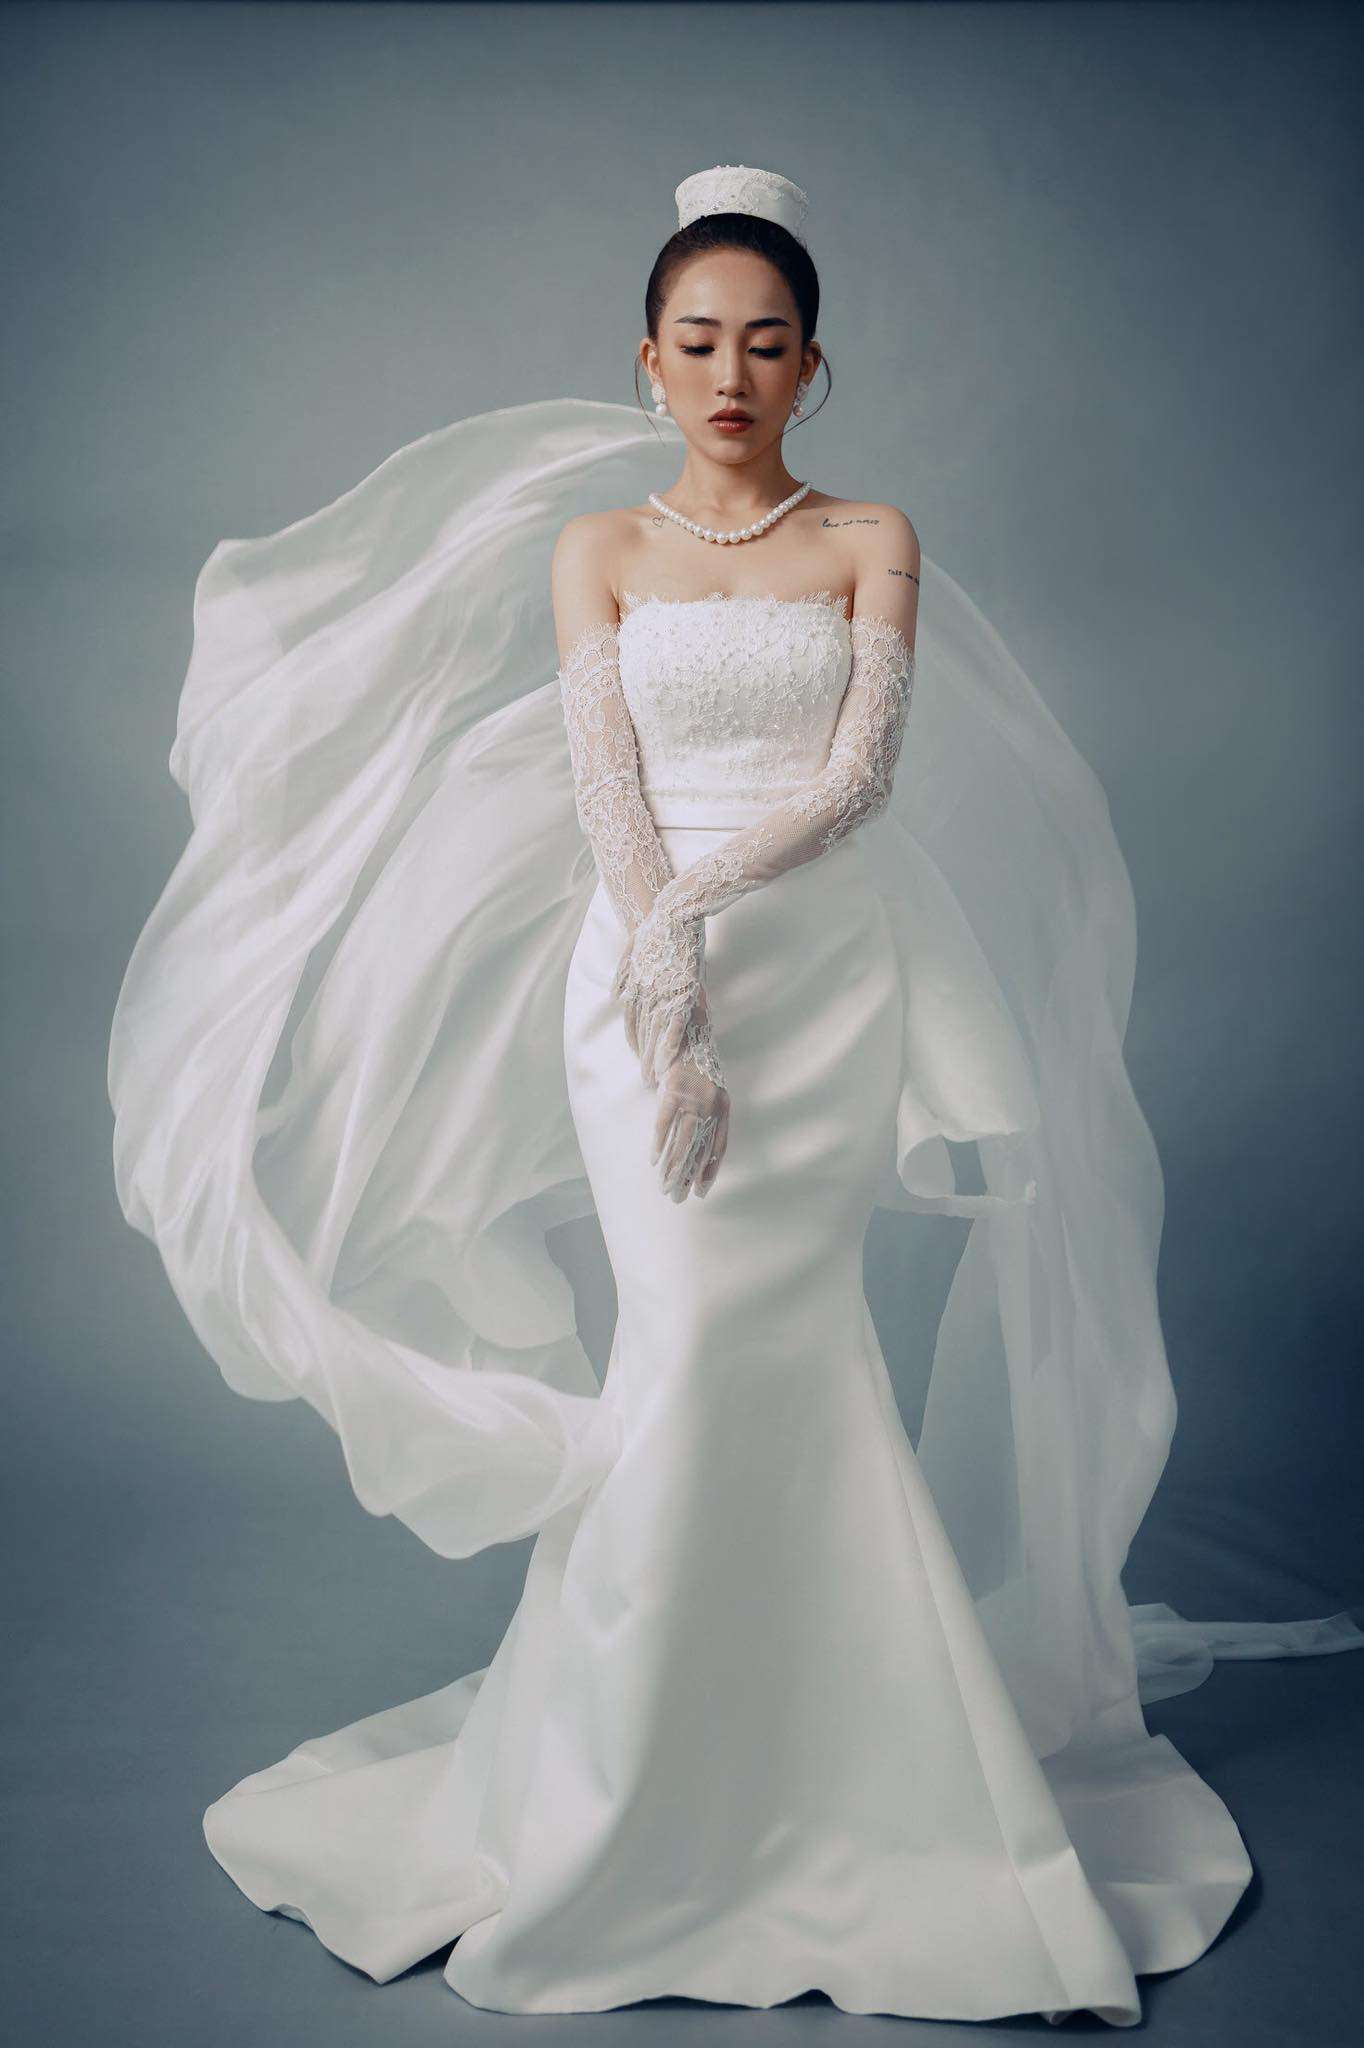 Mua váy cưới giá rẻ ở Hà Nội chưa bao giờ dễ dàng đến thế